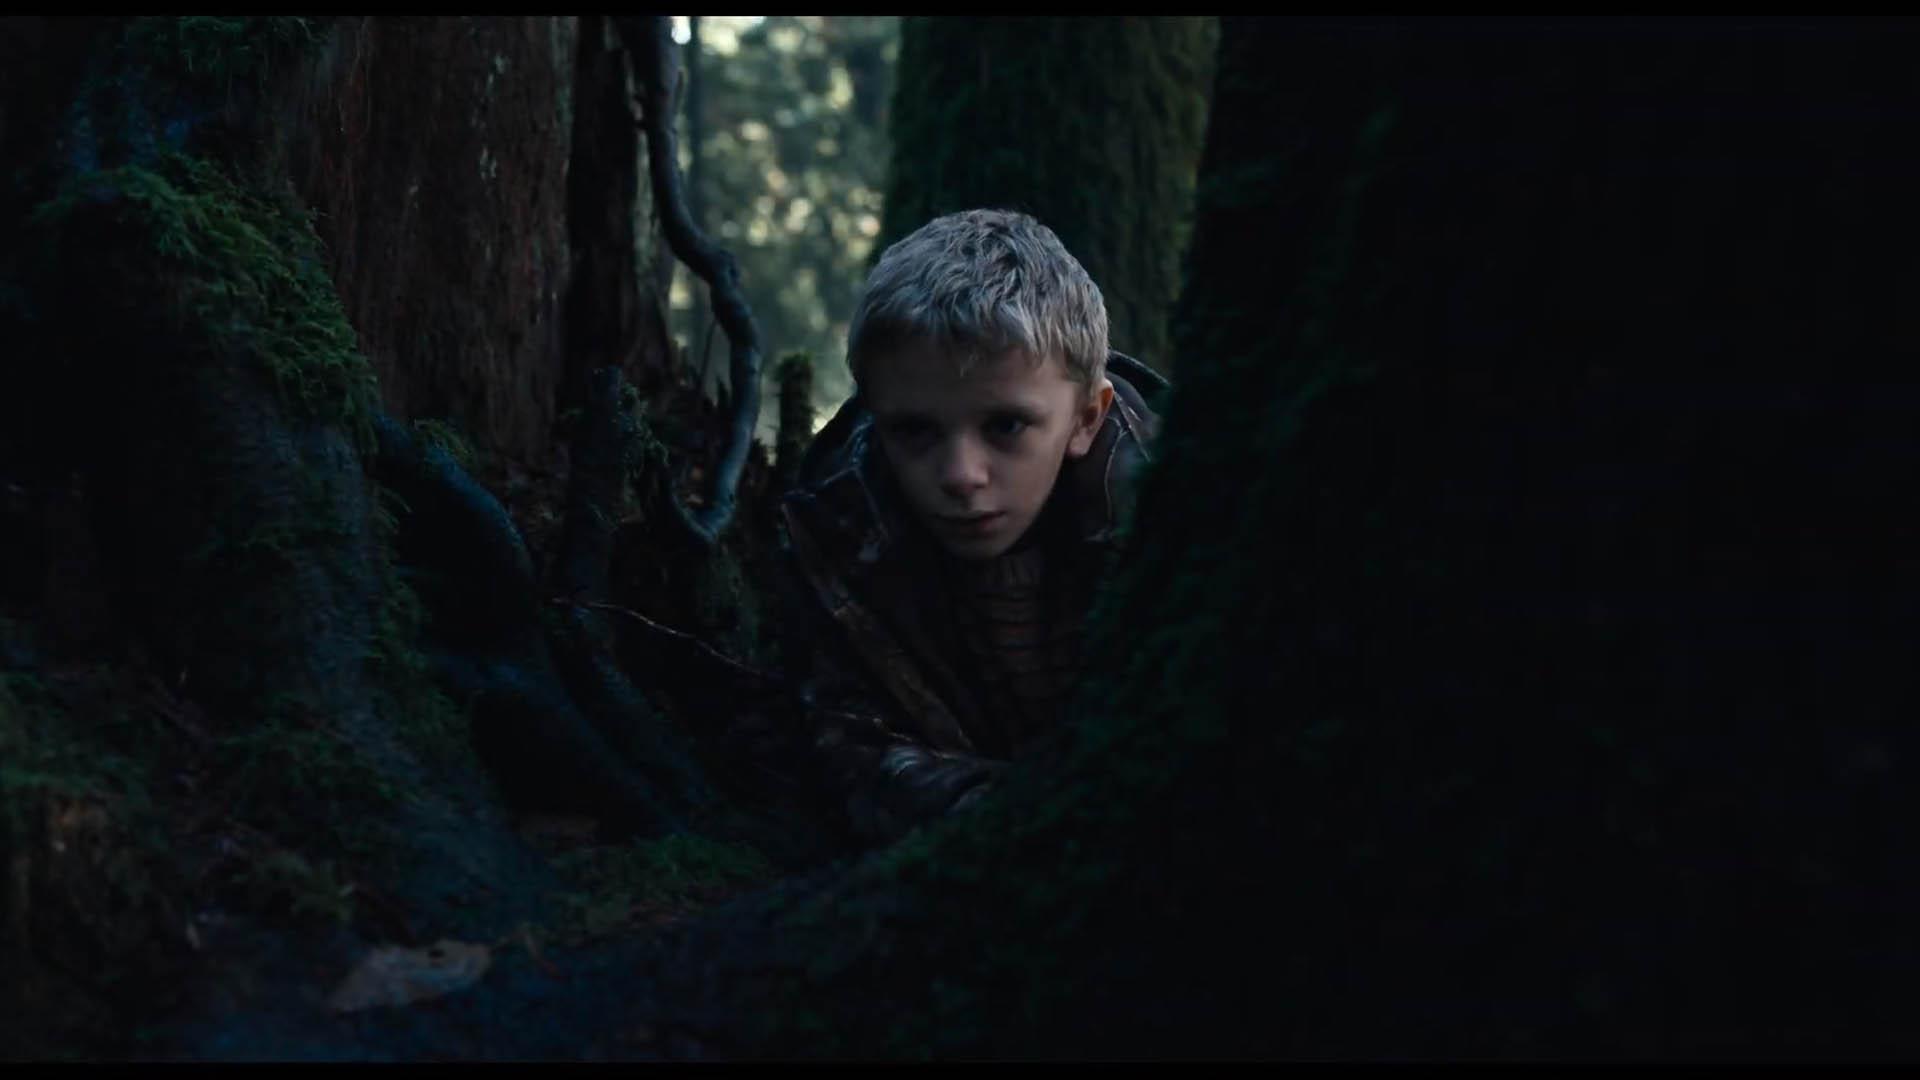 جرمی تی توماس در جنگل و میان درختان در فیلم Antlers